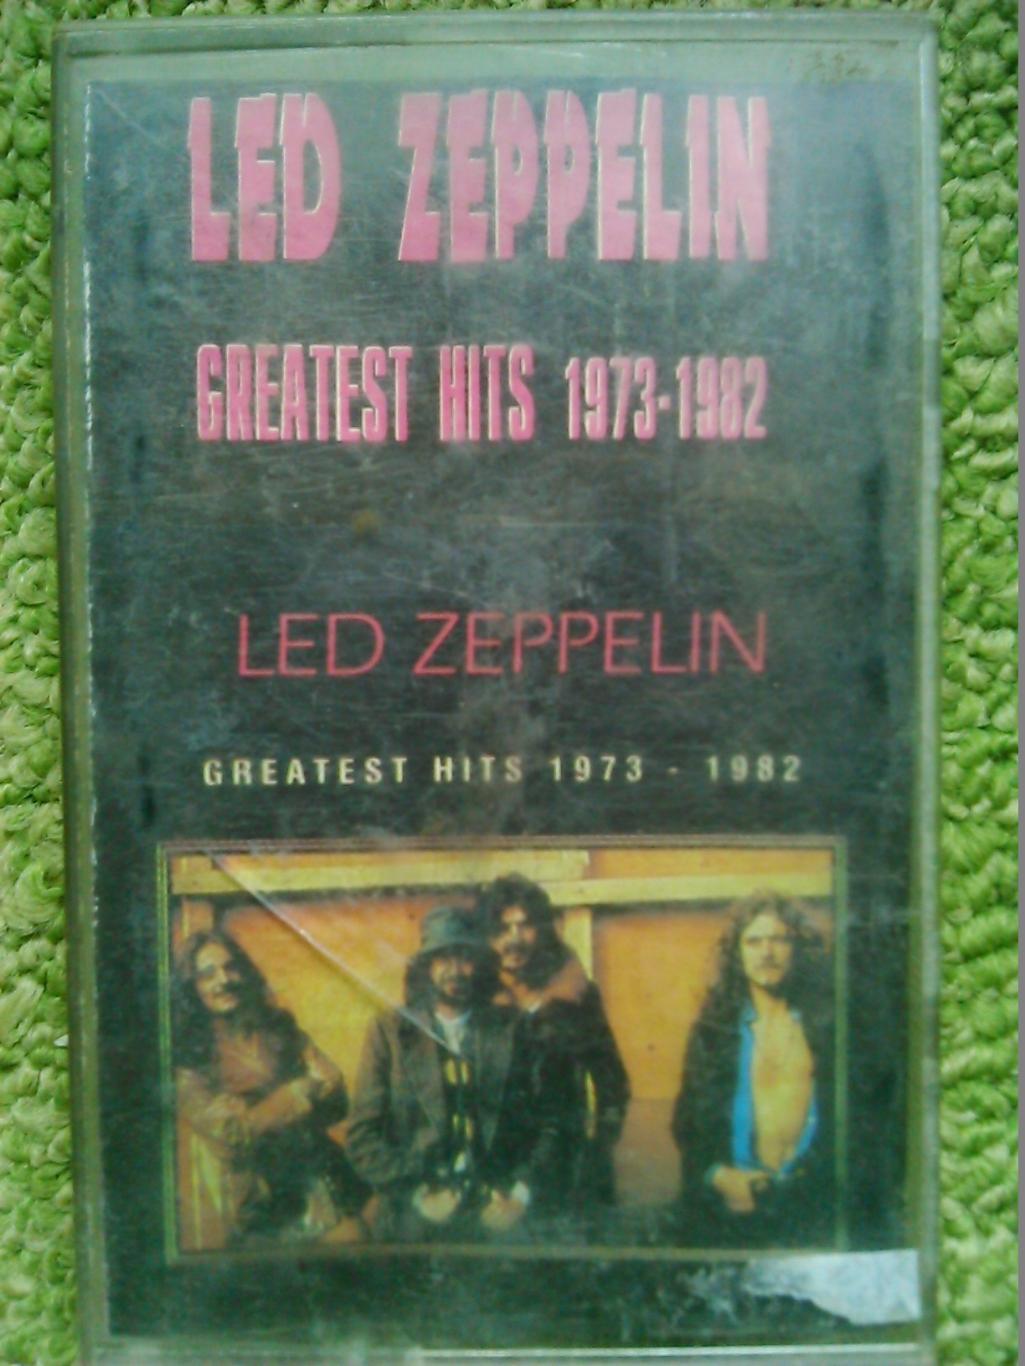 MC/аудиокассета LED ZEPPELIN/greatest hits 1973-1982. Оптом скидки до 46%!